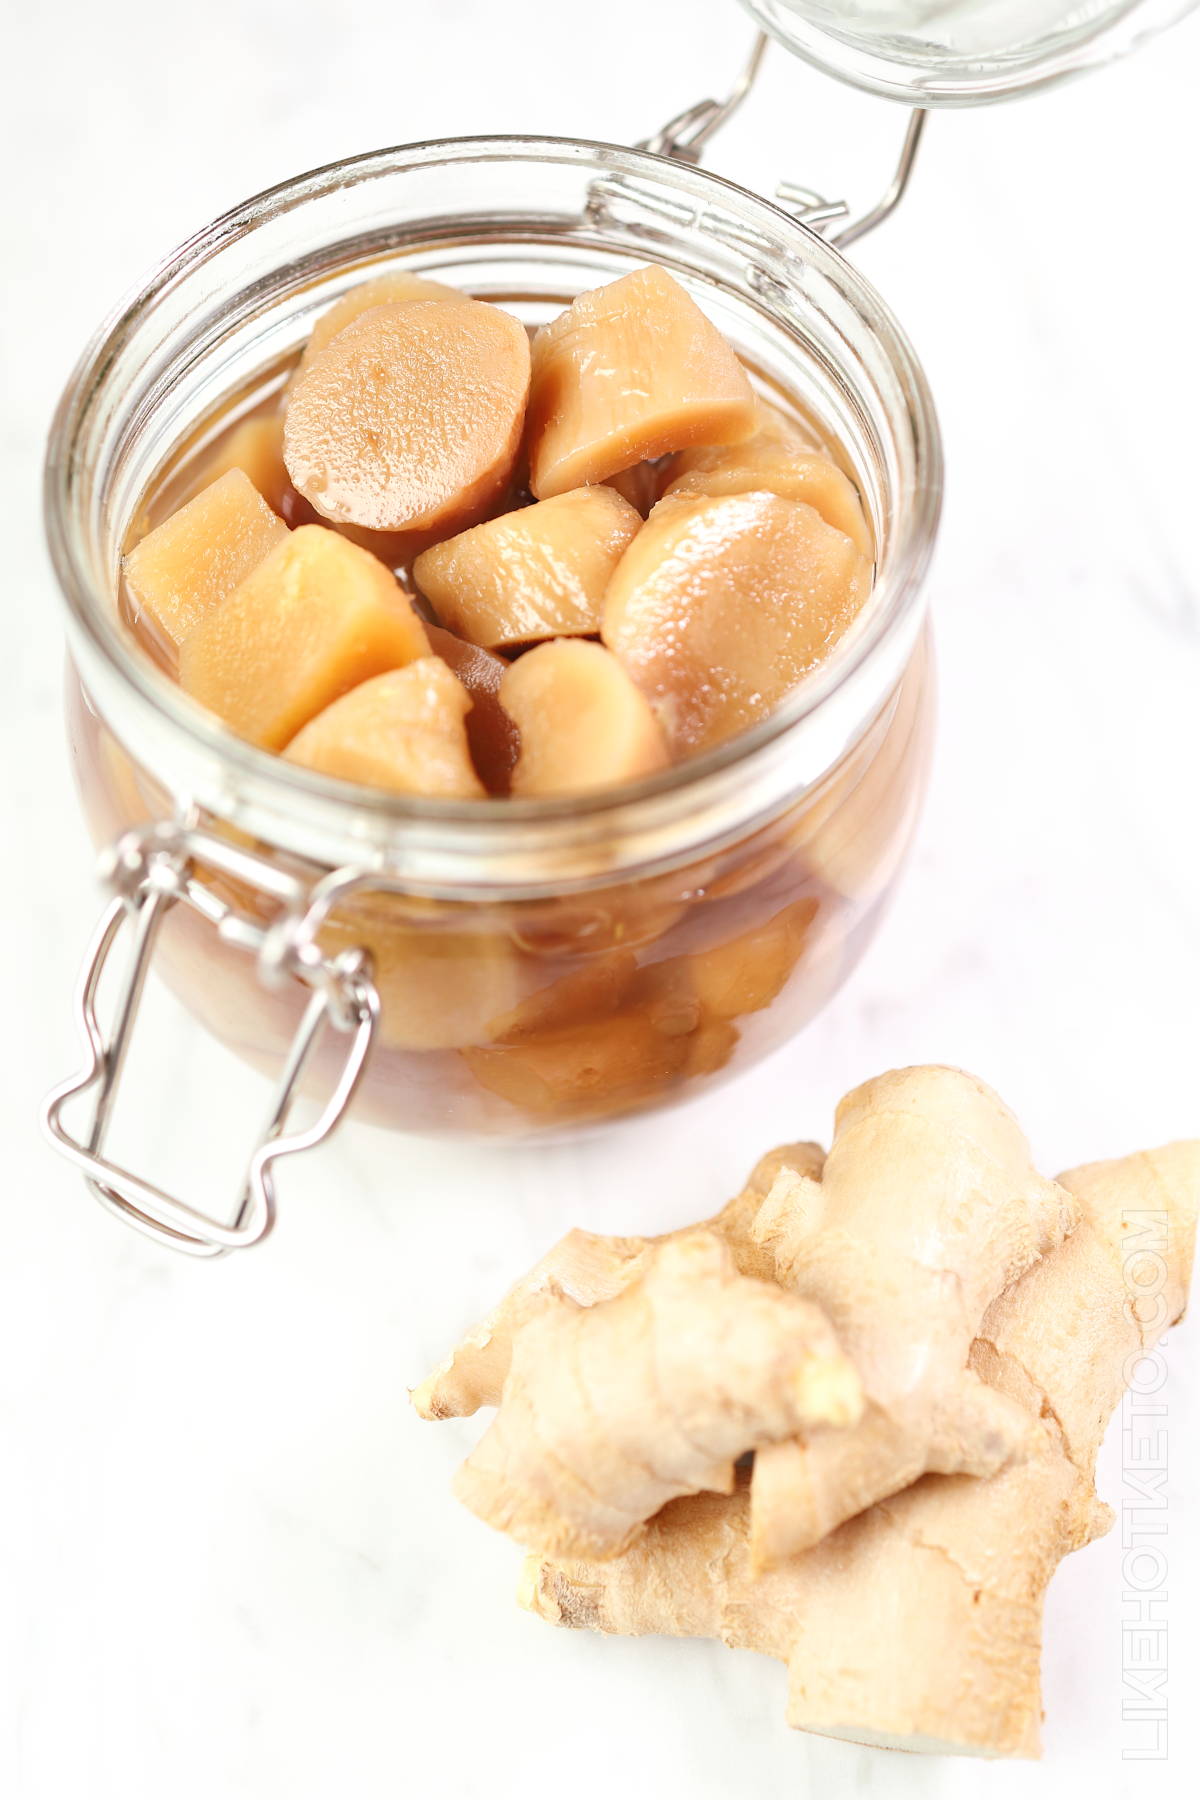 Homemade keto stem ginger in mason jar, fresh ginger knobs.